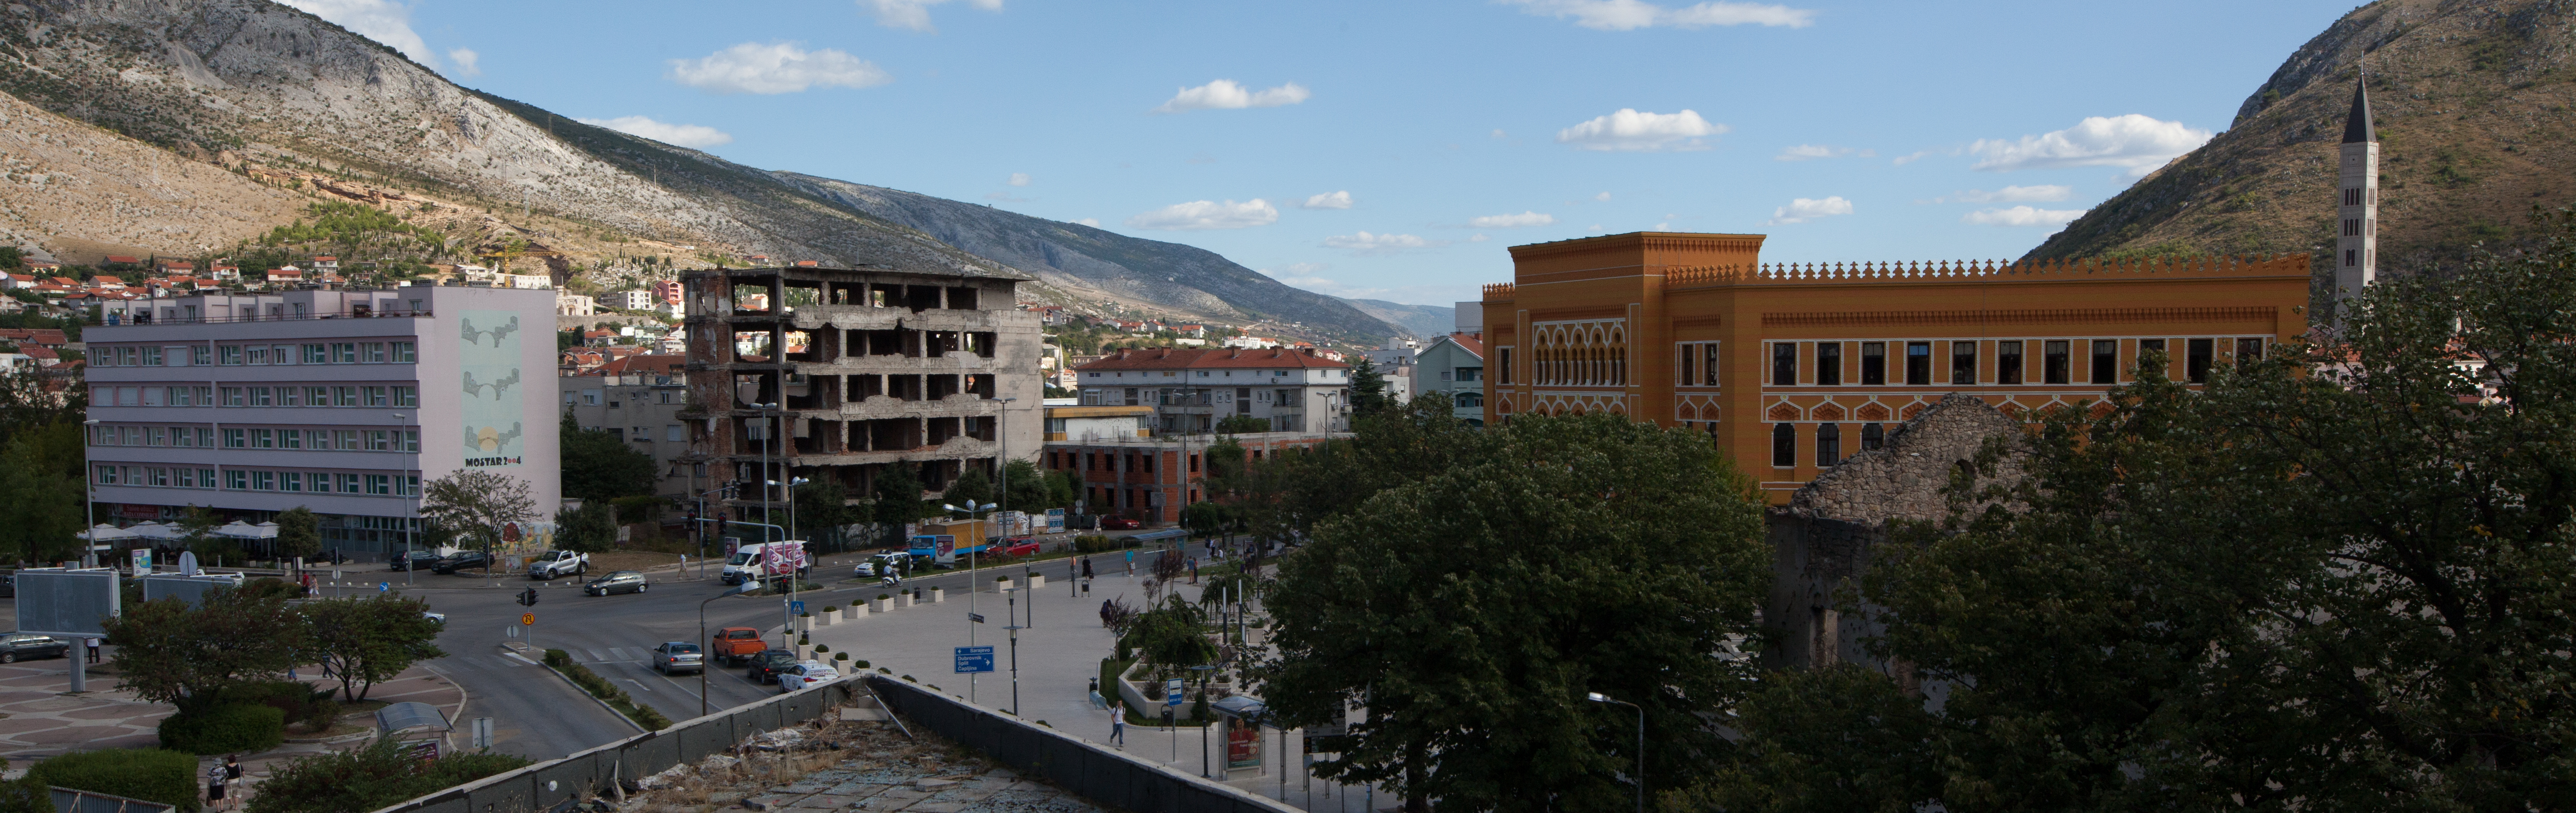 War-torn Mostar, Bosnia